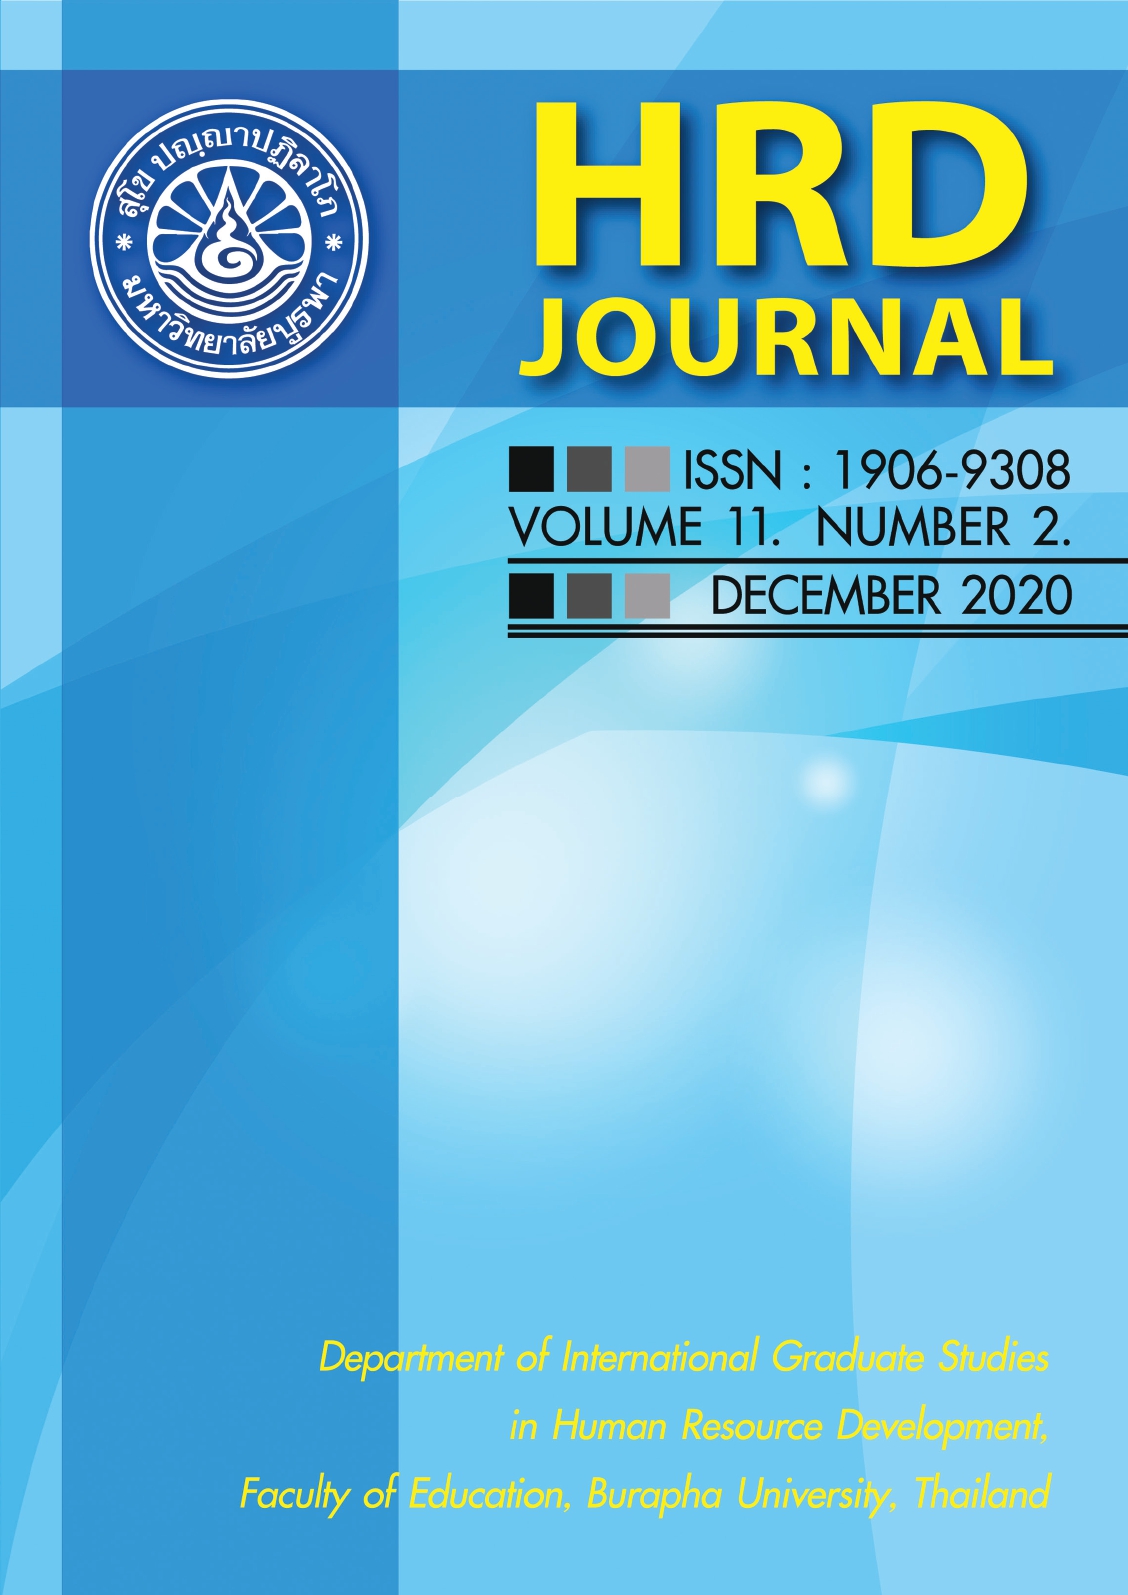 					View Vol. 11 No. 2 (2020): HRD Journal, December 2020
				